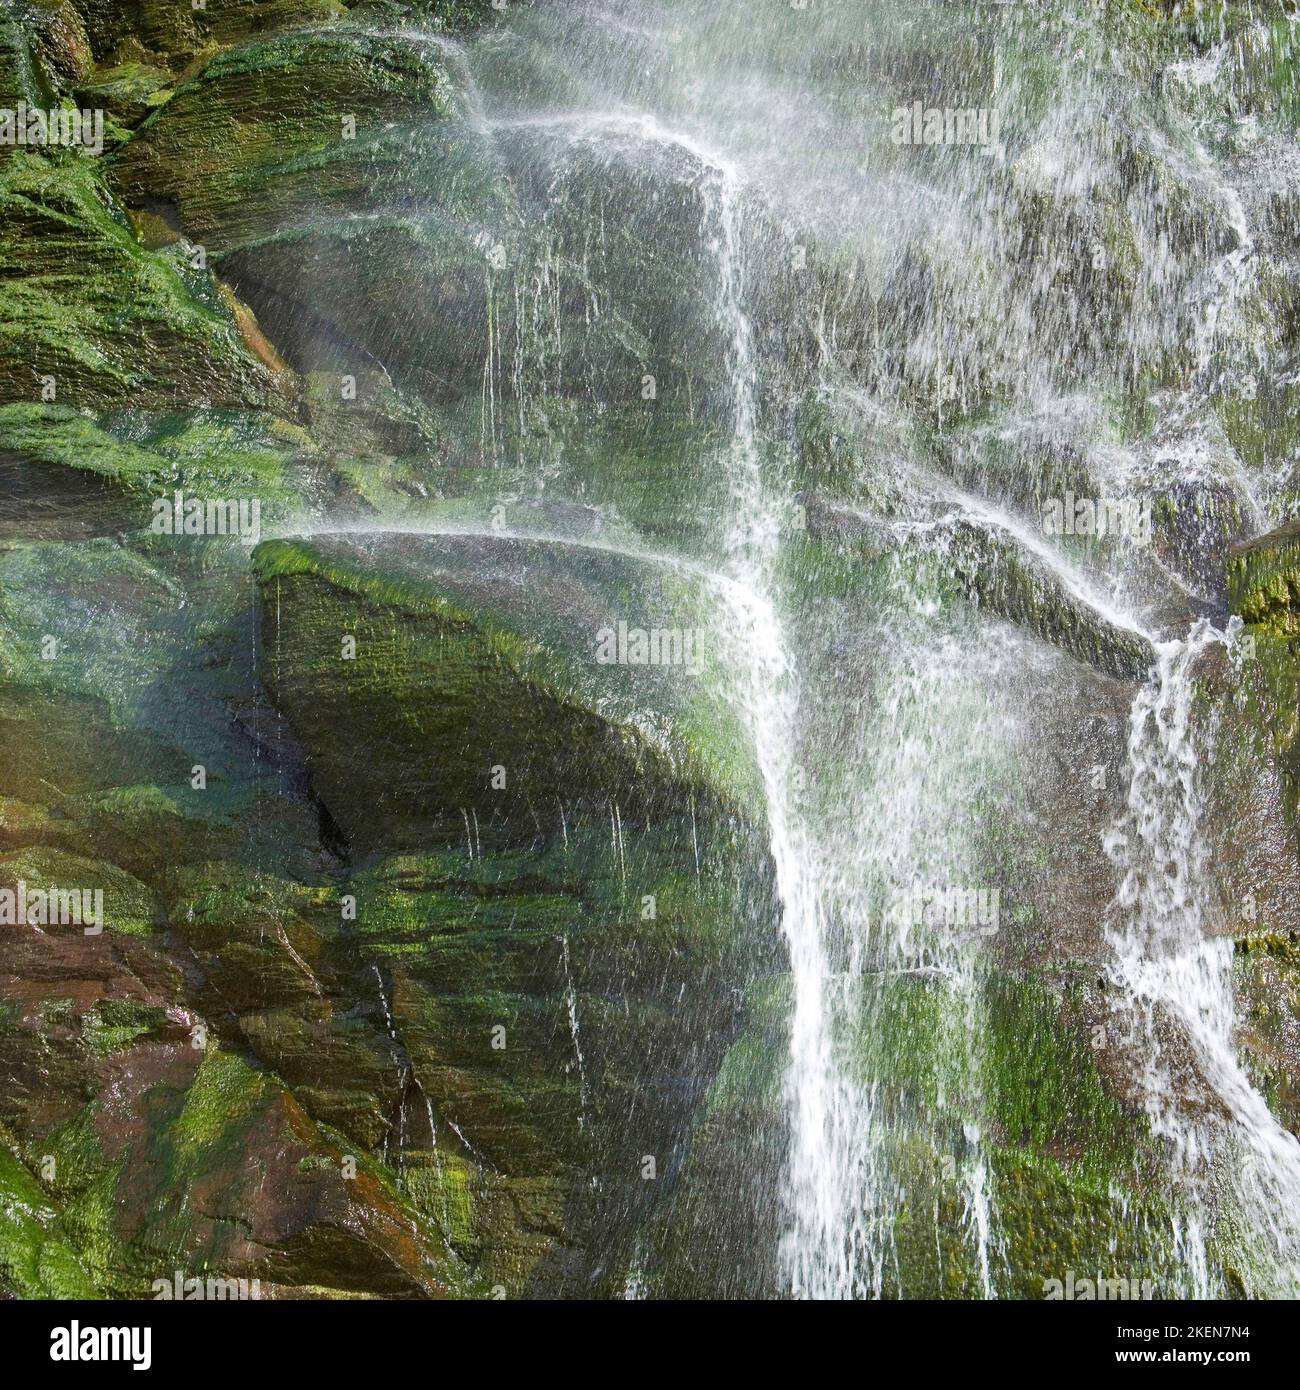 Gros plan sur la rivière Saith cascade qui se déversant sur les rochers de la plage de Tresaith dans la baie de Cardigan, au pays de Galles Banque D'Images